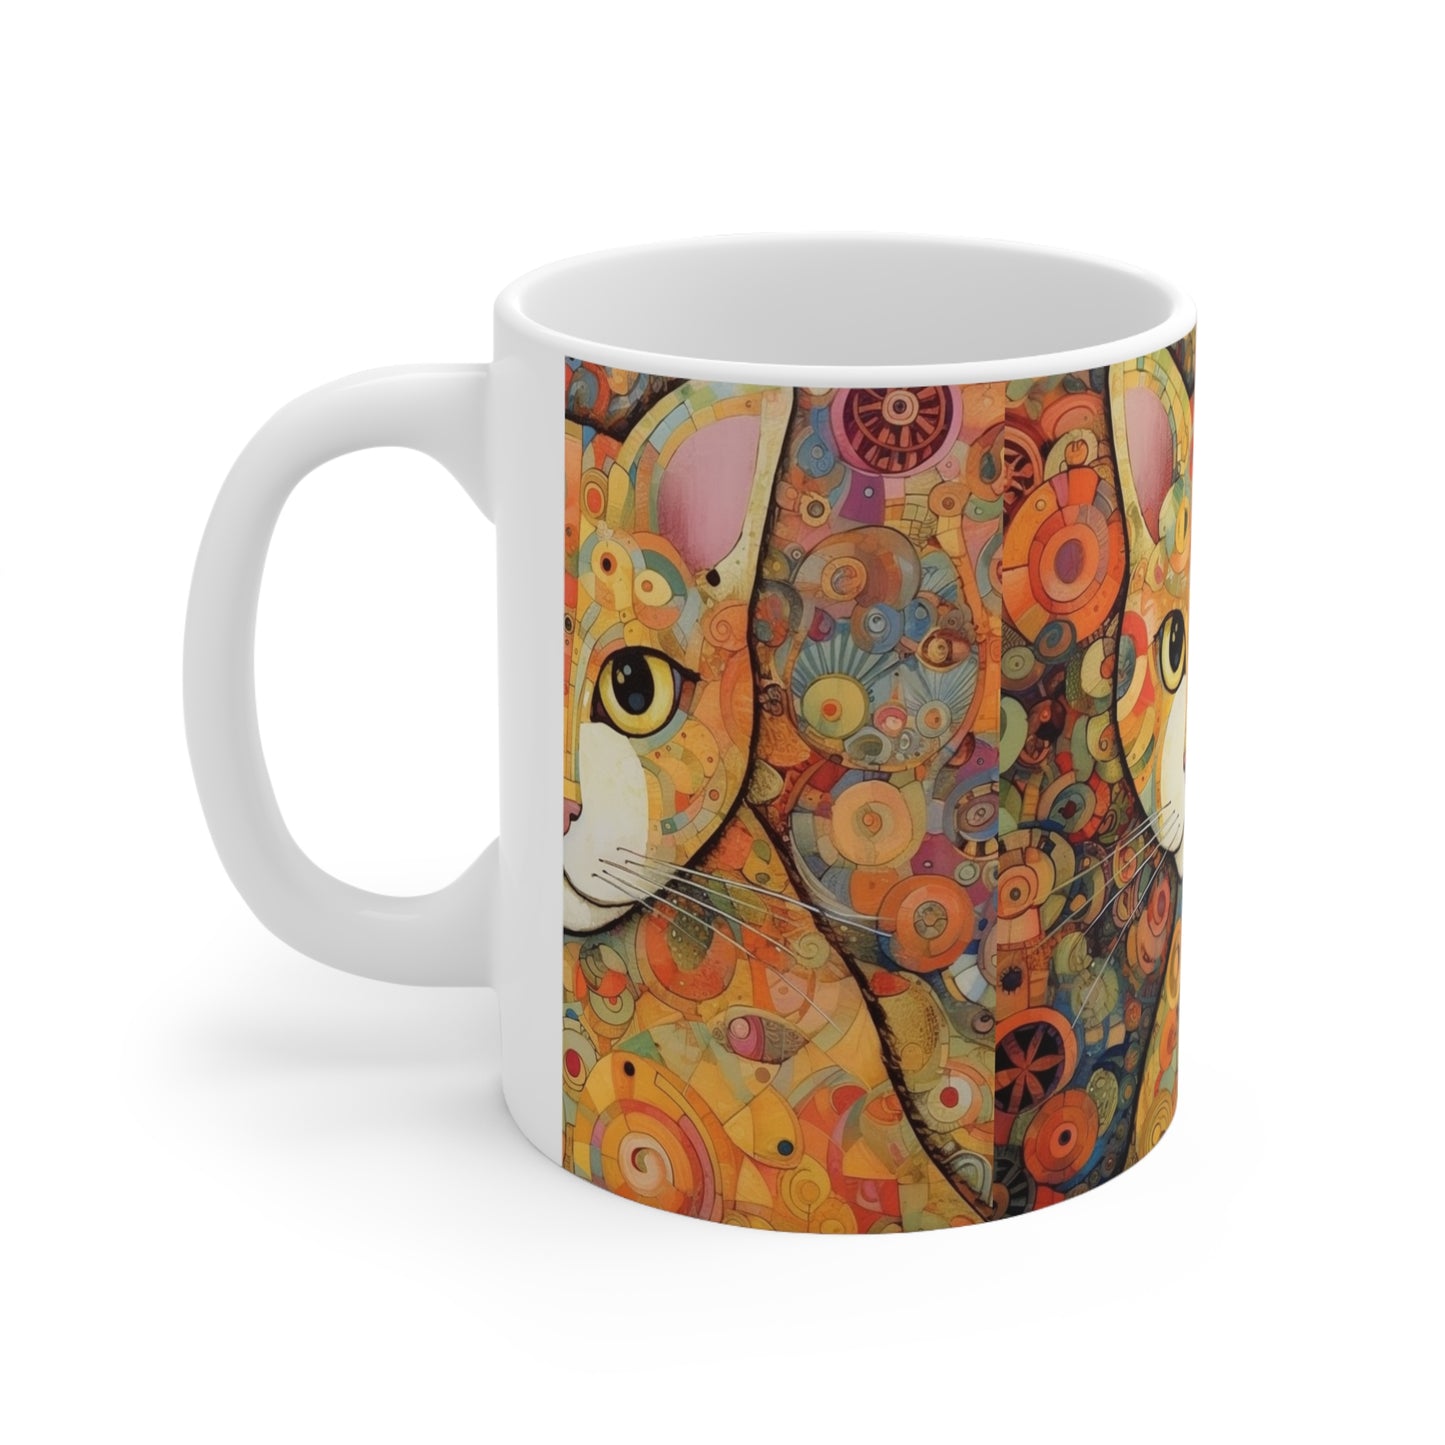 Elegant Art Nouveau: Ceramic Mug Inspired by Gustav Klimt